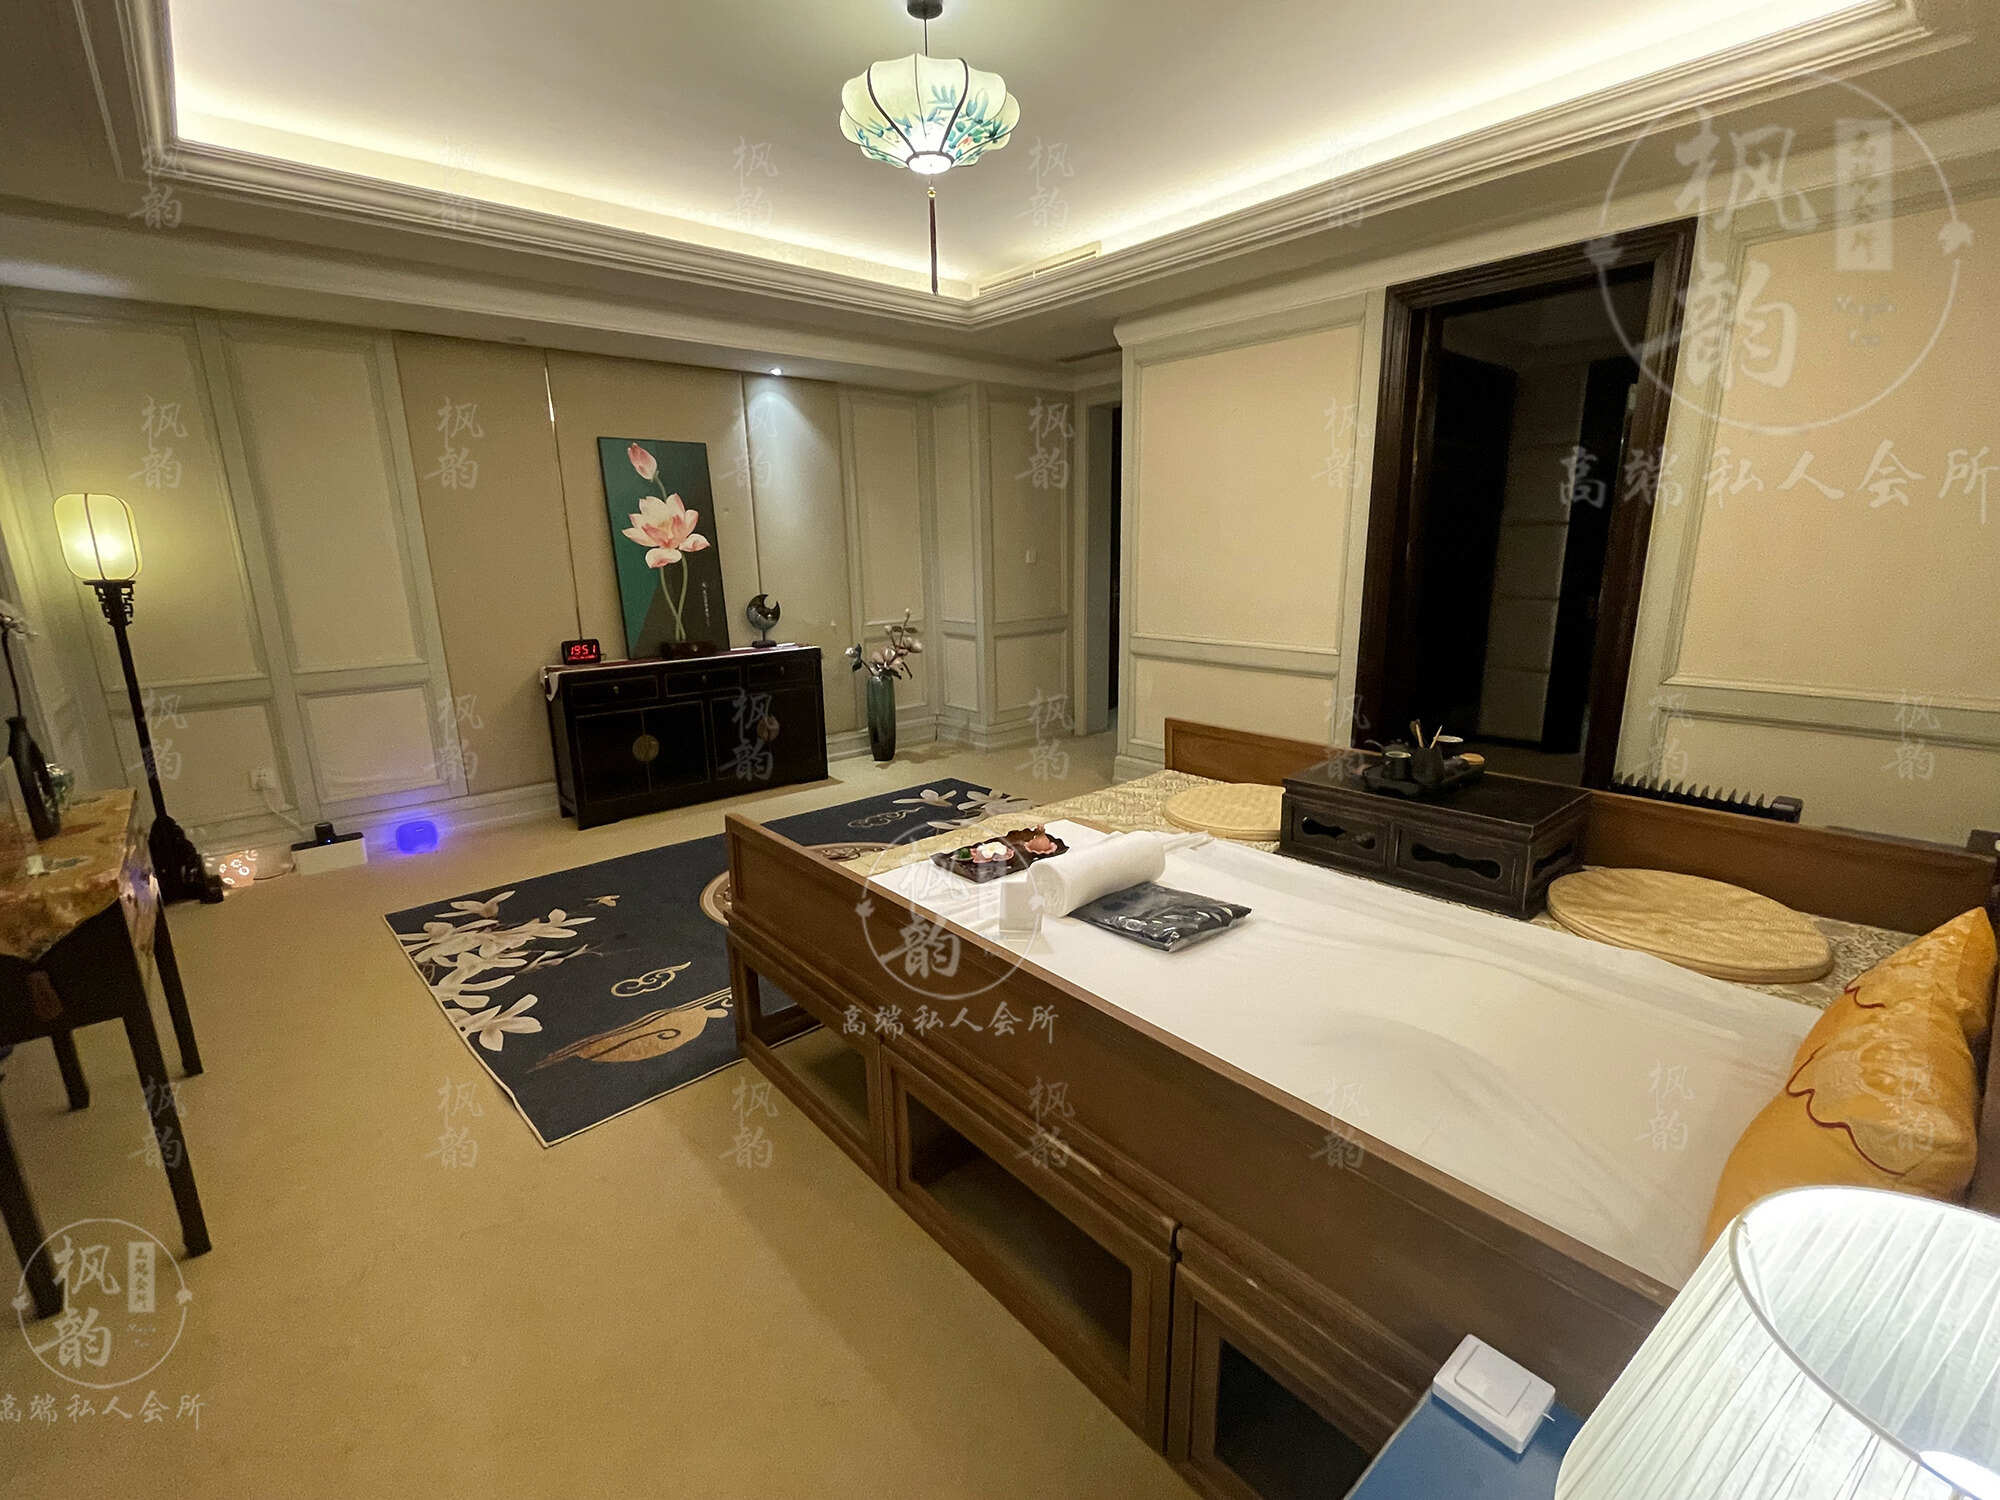 常德天津渔阳鼓楼人气优选沐足会馆房间也很干净，舒适的spa体验